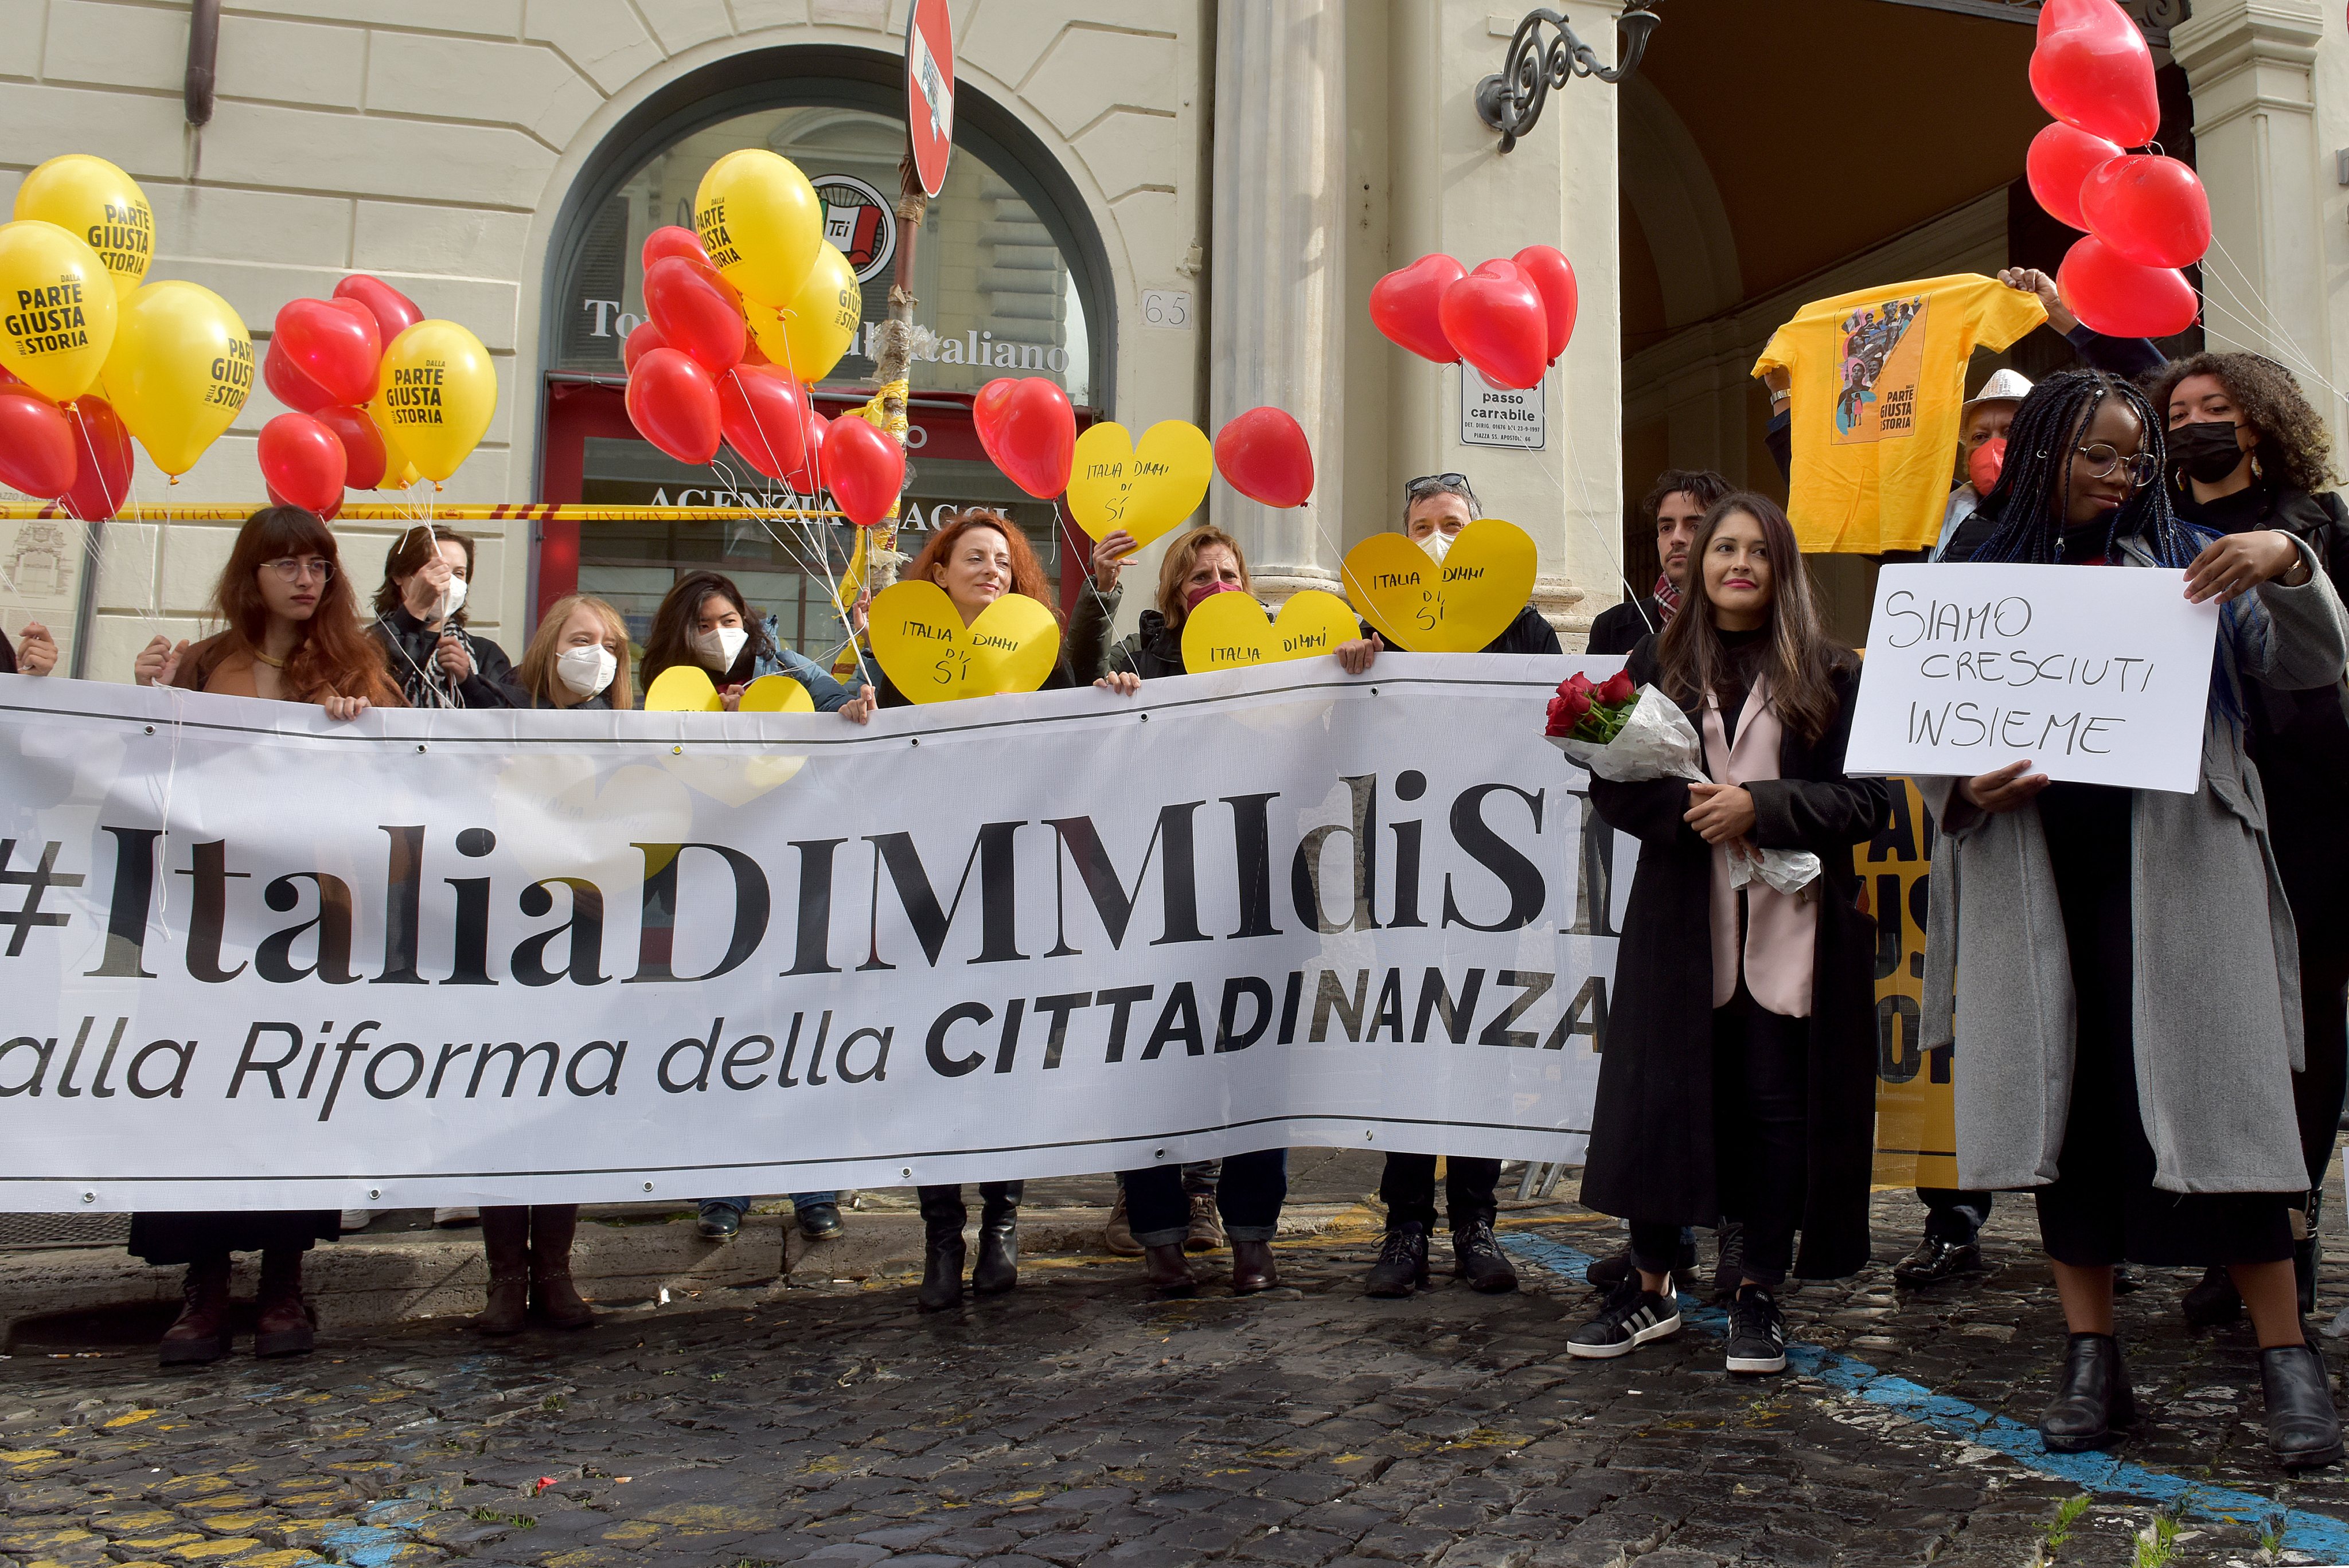 Celebração do Dia de São Valentim, também conhecido como Dia dos Namorados, na Itália, onde se realizou um protesto contra a lei que exige matrimónio, prova de ascendência italiana ou provas de residência para se ser um cidadão italiano